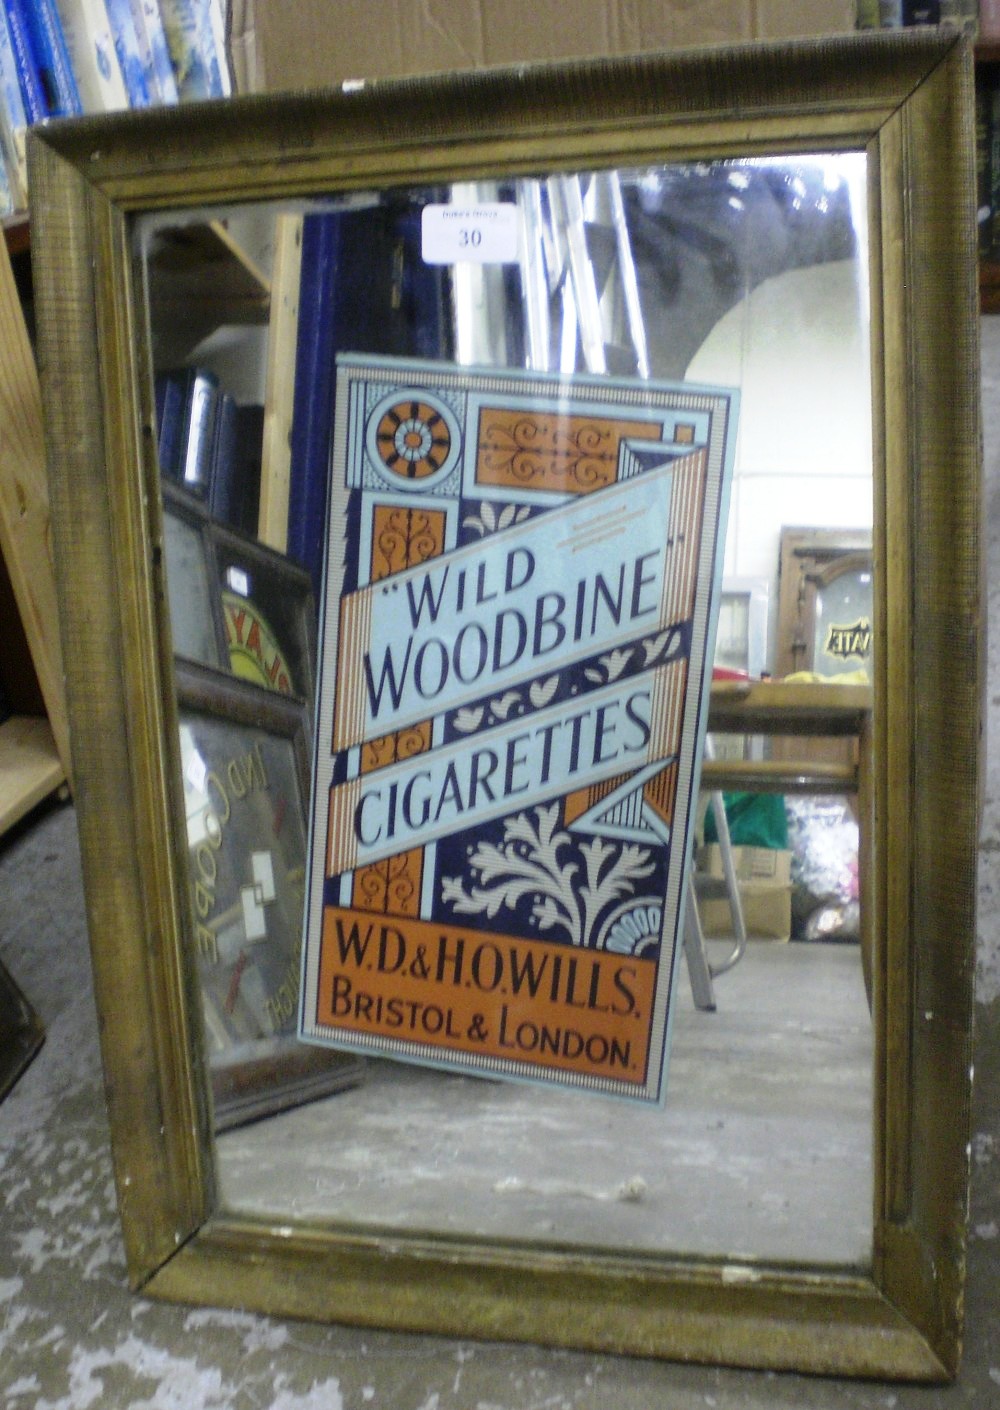 A cigarette advertising mirror `Wild Woodbine Cigarettes`